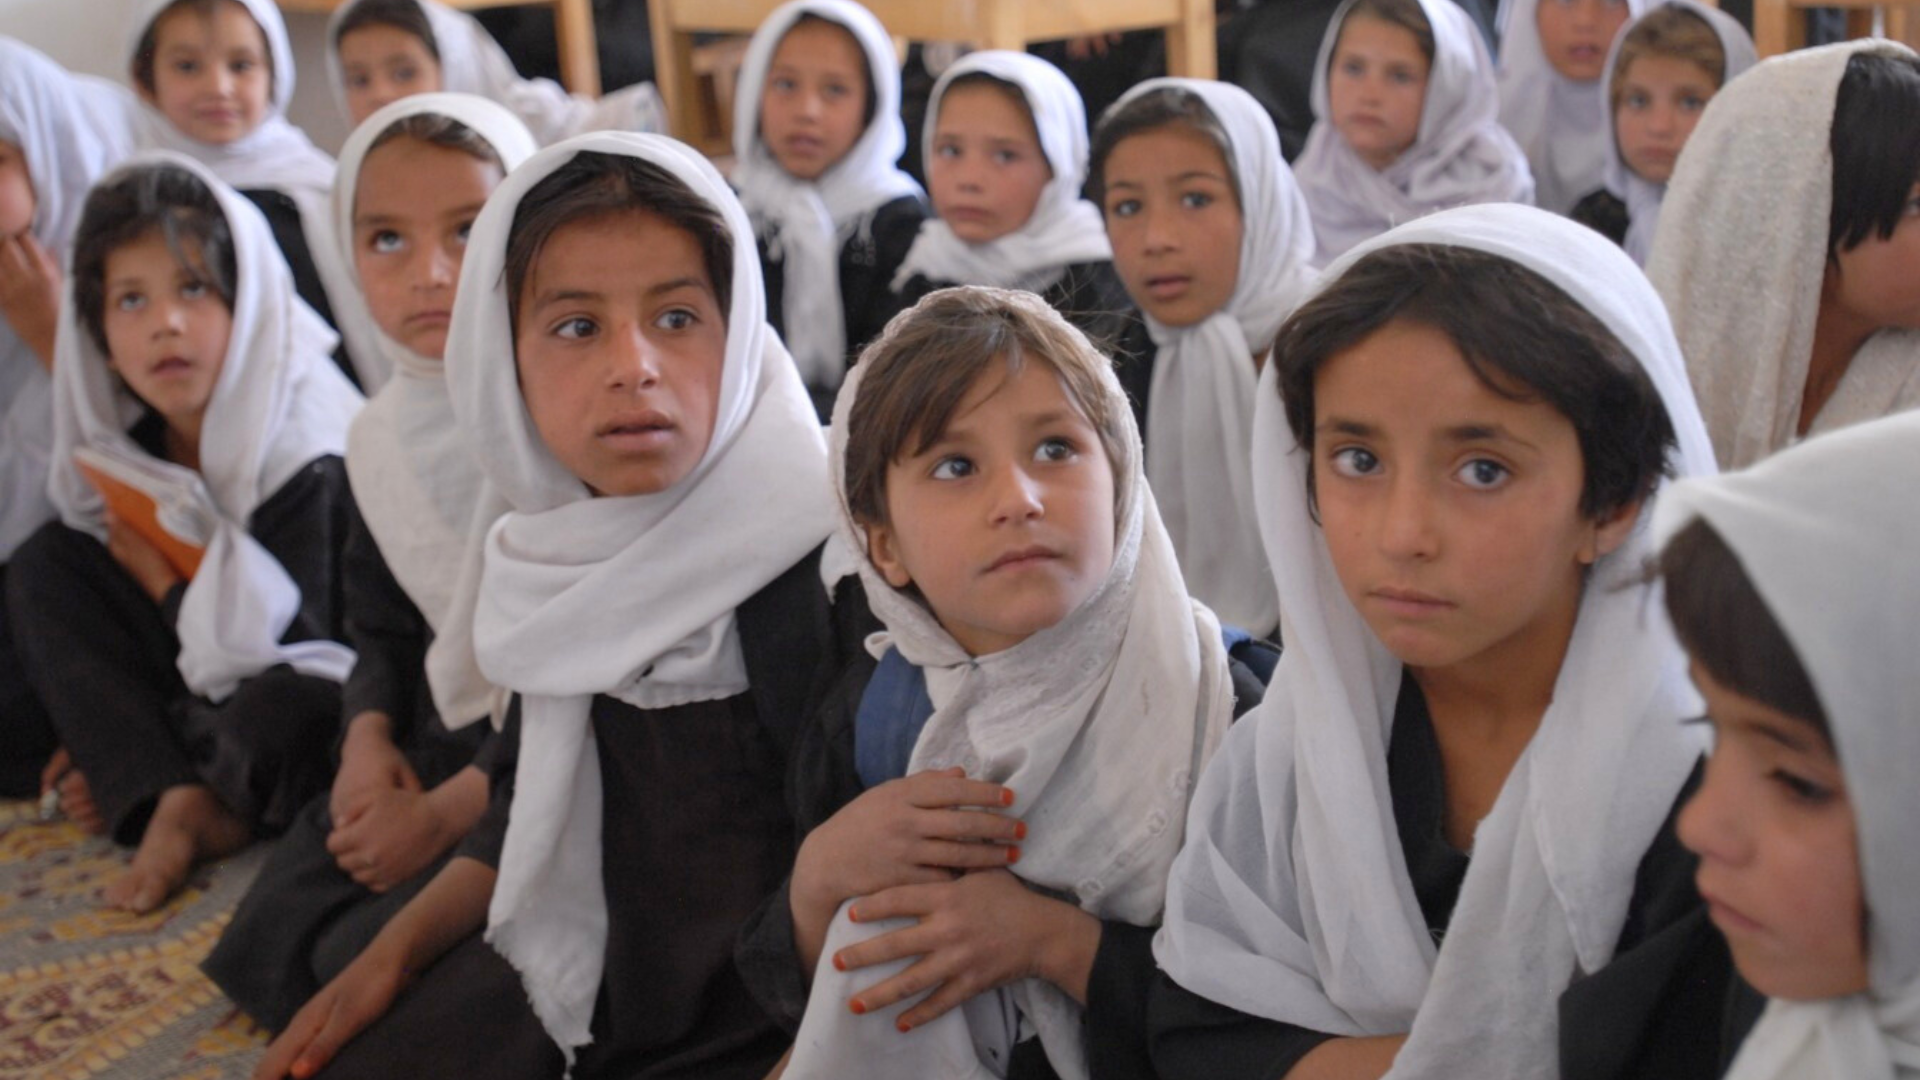 Nice : les enfants récitent des prières musulmanes à l’école !